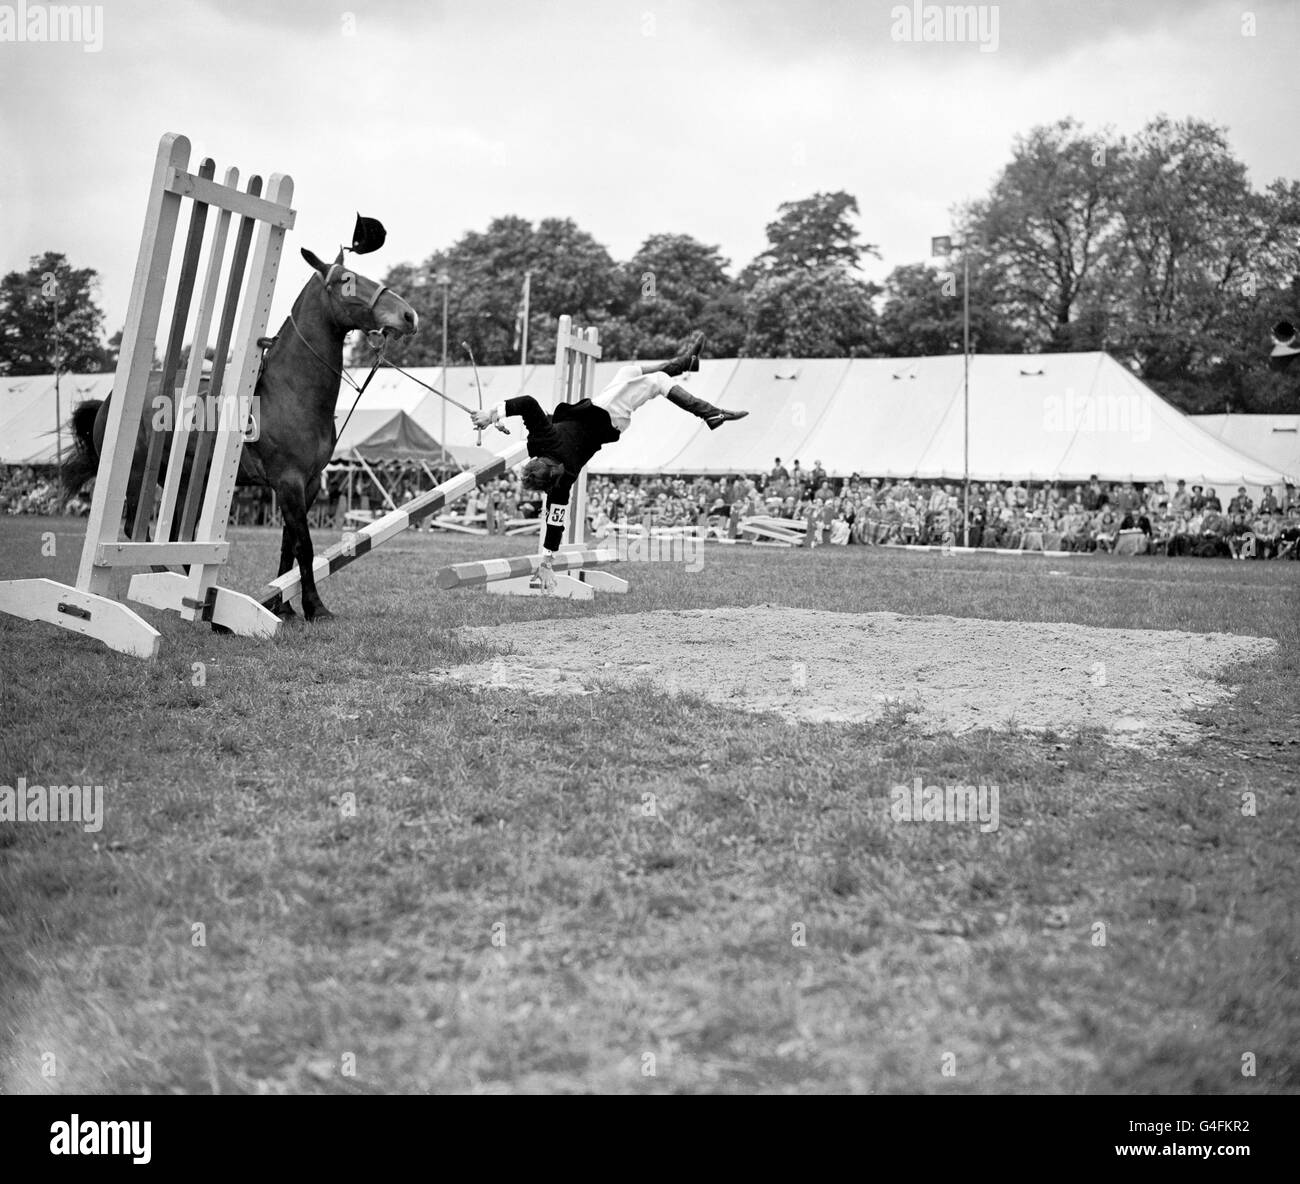 Le cavalier D. Kent tombe de son cheval, Sugar Bush, lors de la compétition de saut à six bars au Royal Windsor Horse Show Banque D'Images